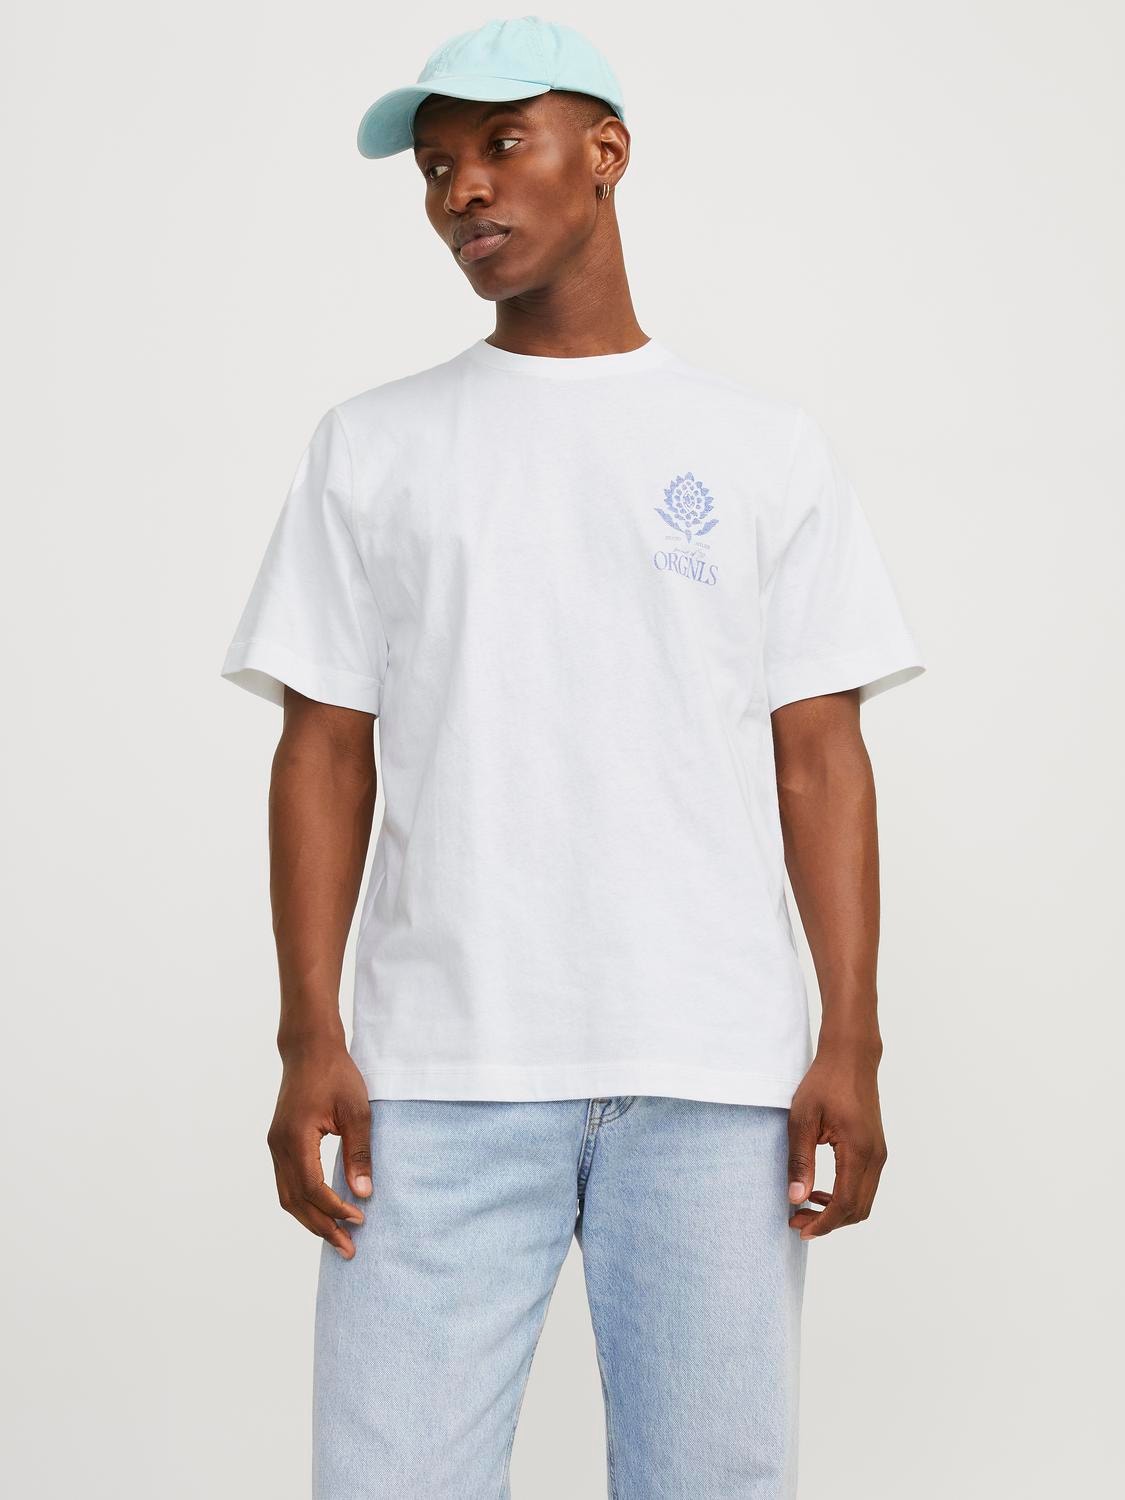 Jack & Jones T-shirt Estampar Decote Redondo -Bright White - 12256406